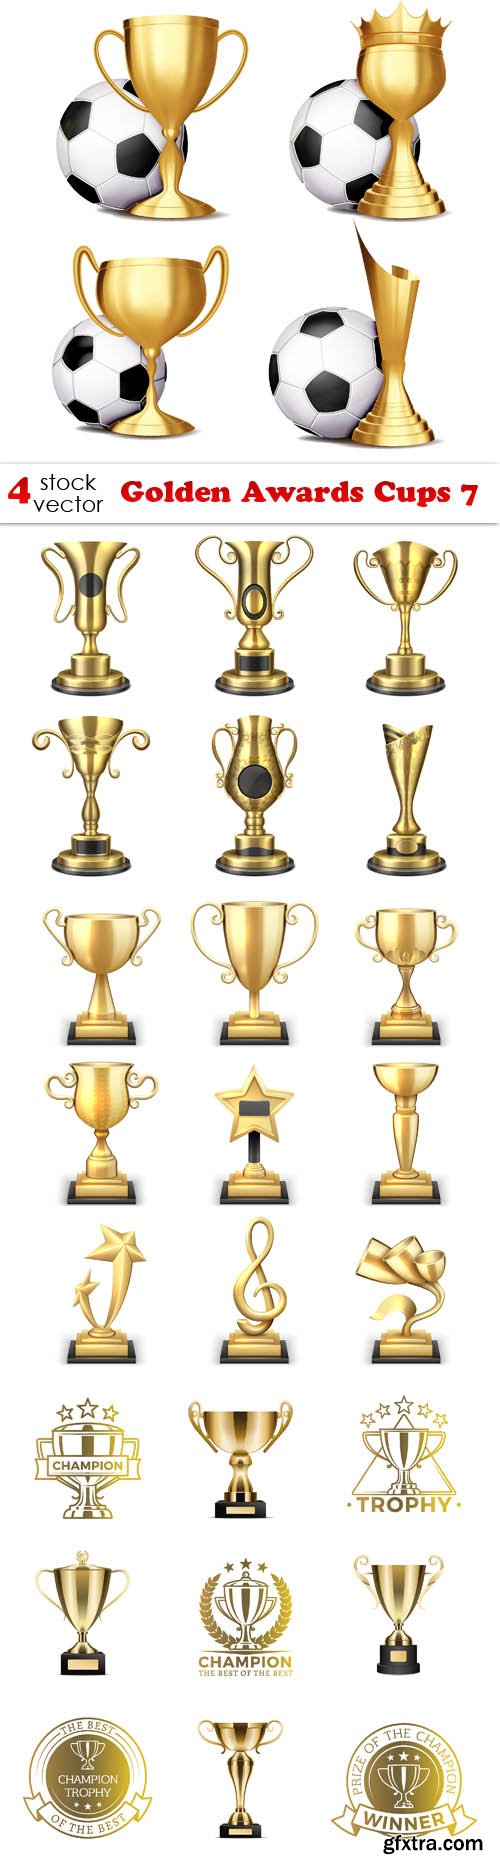 Vectors - Golden Awards Cups 7